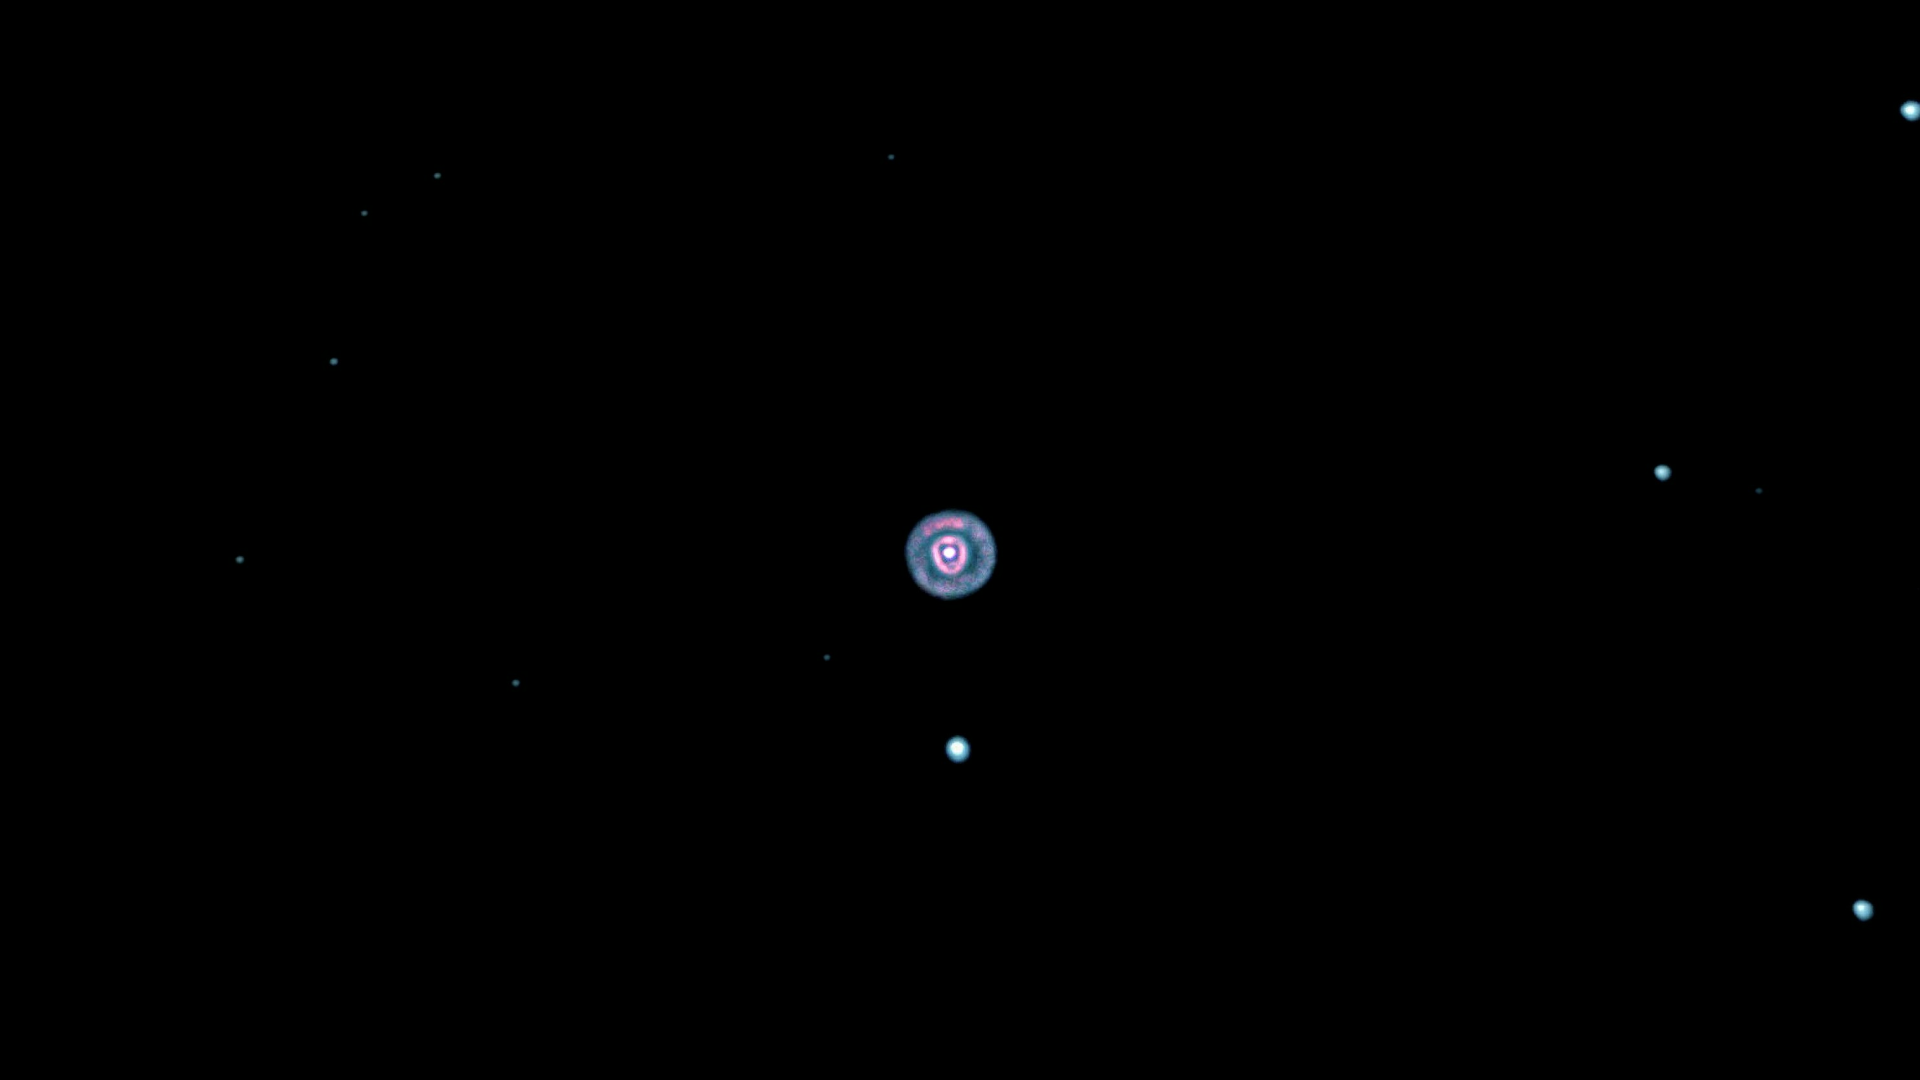 Eskimo Nebula